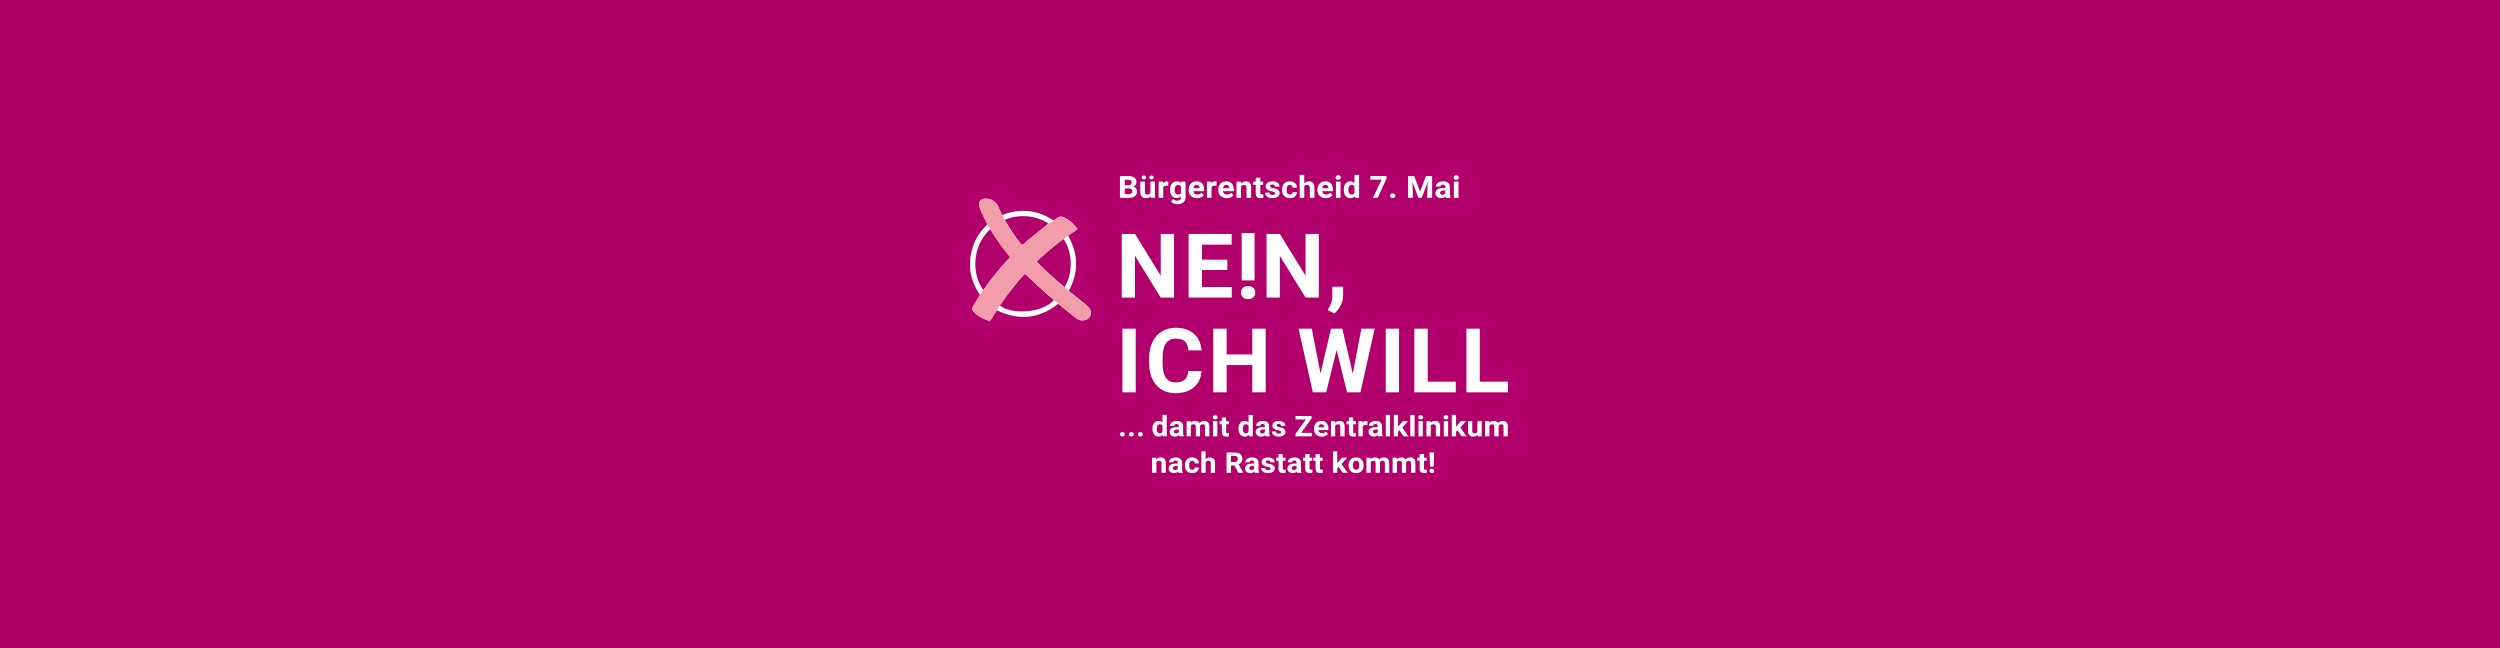 Visualisierung mit Schriftzug "Nein, ich will" zur Kampagne der Stadt Rastatt